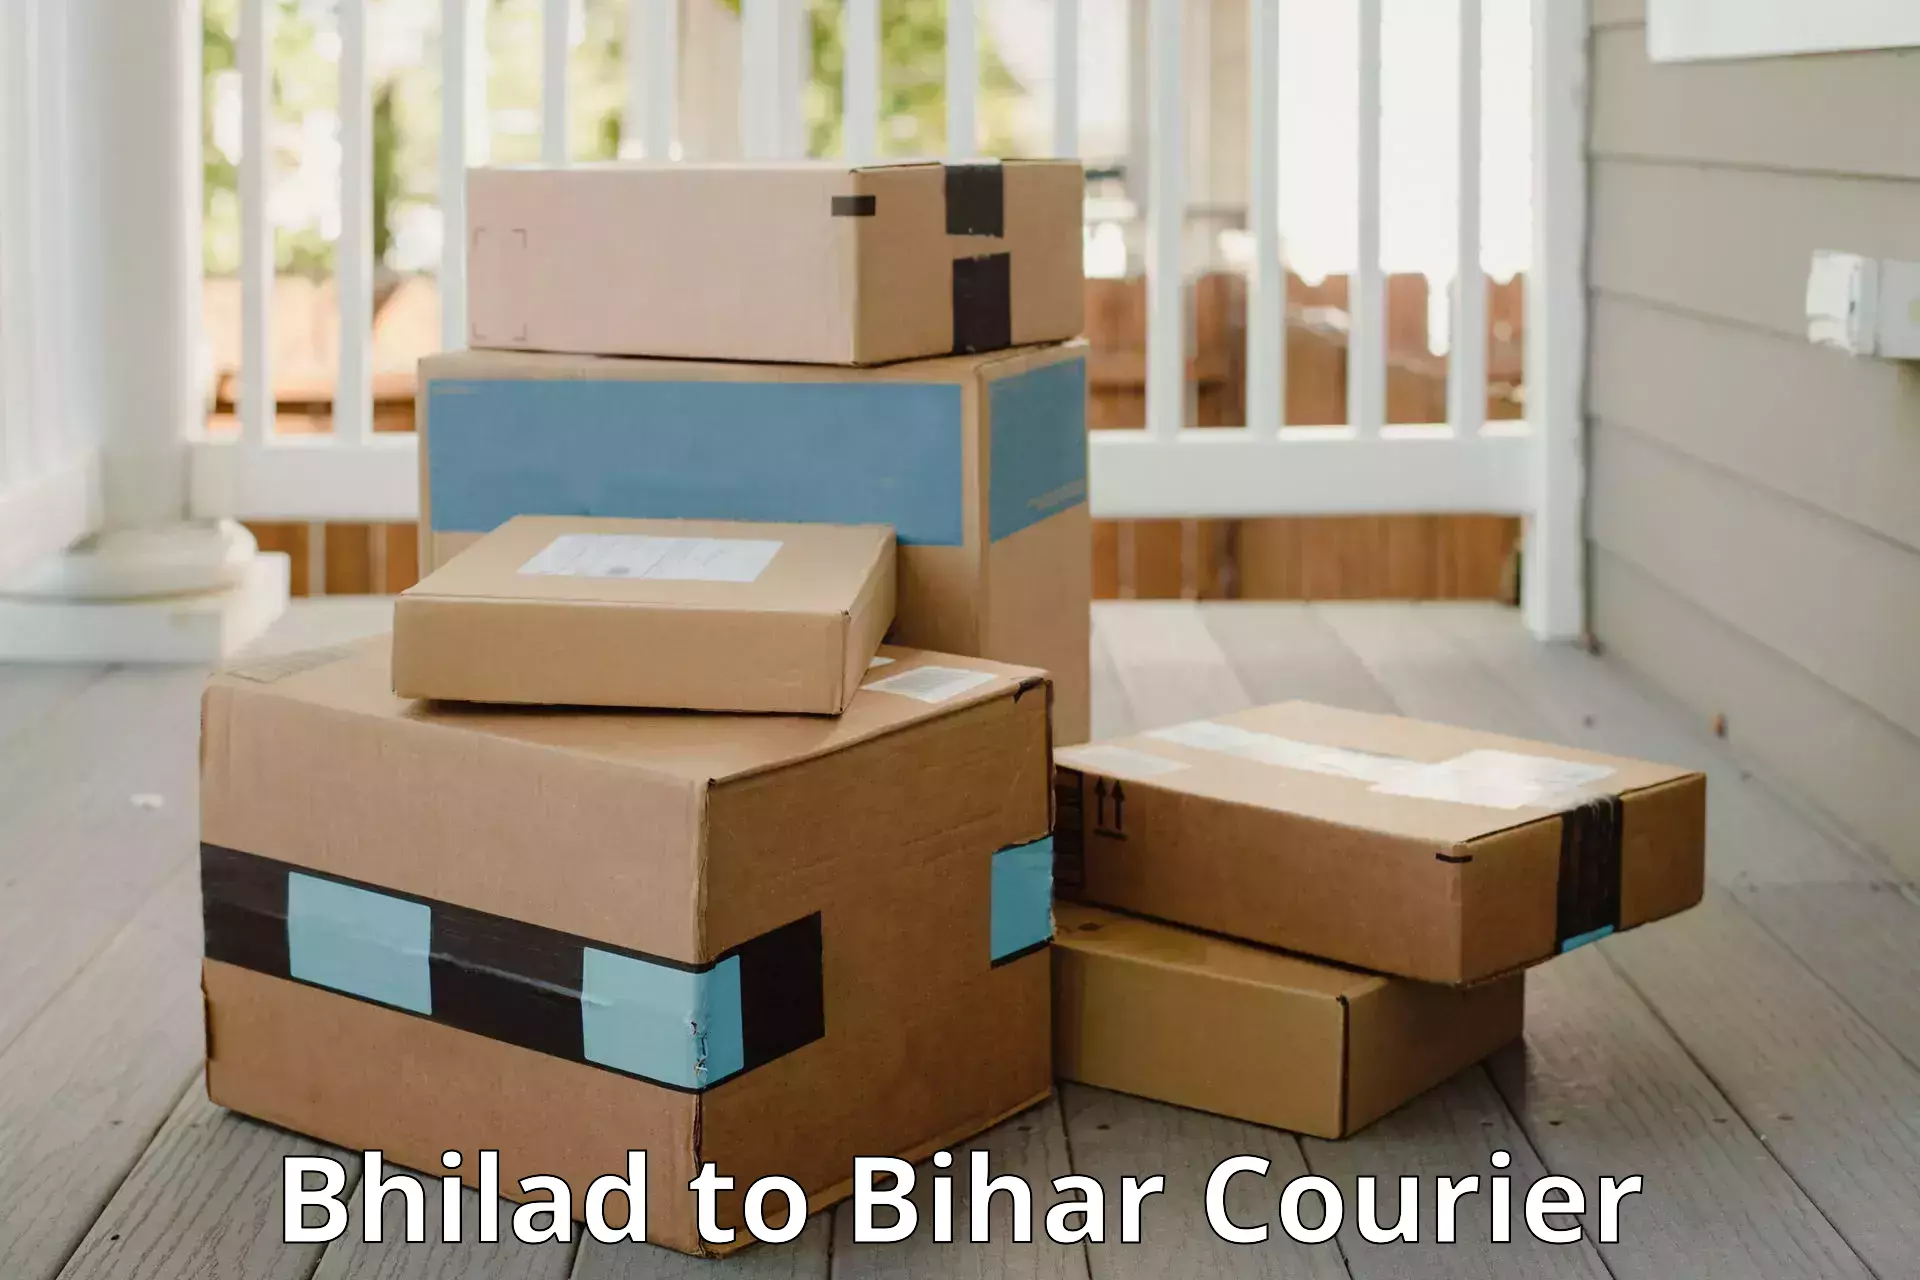 Baggage delivery management Bhilad to Bihar